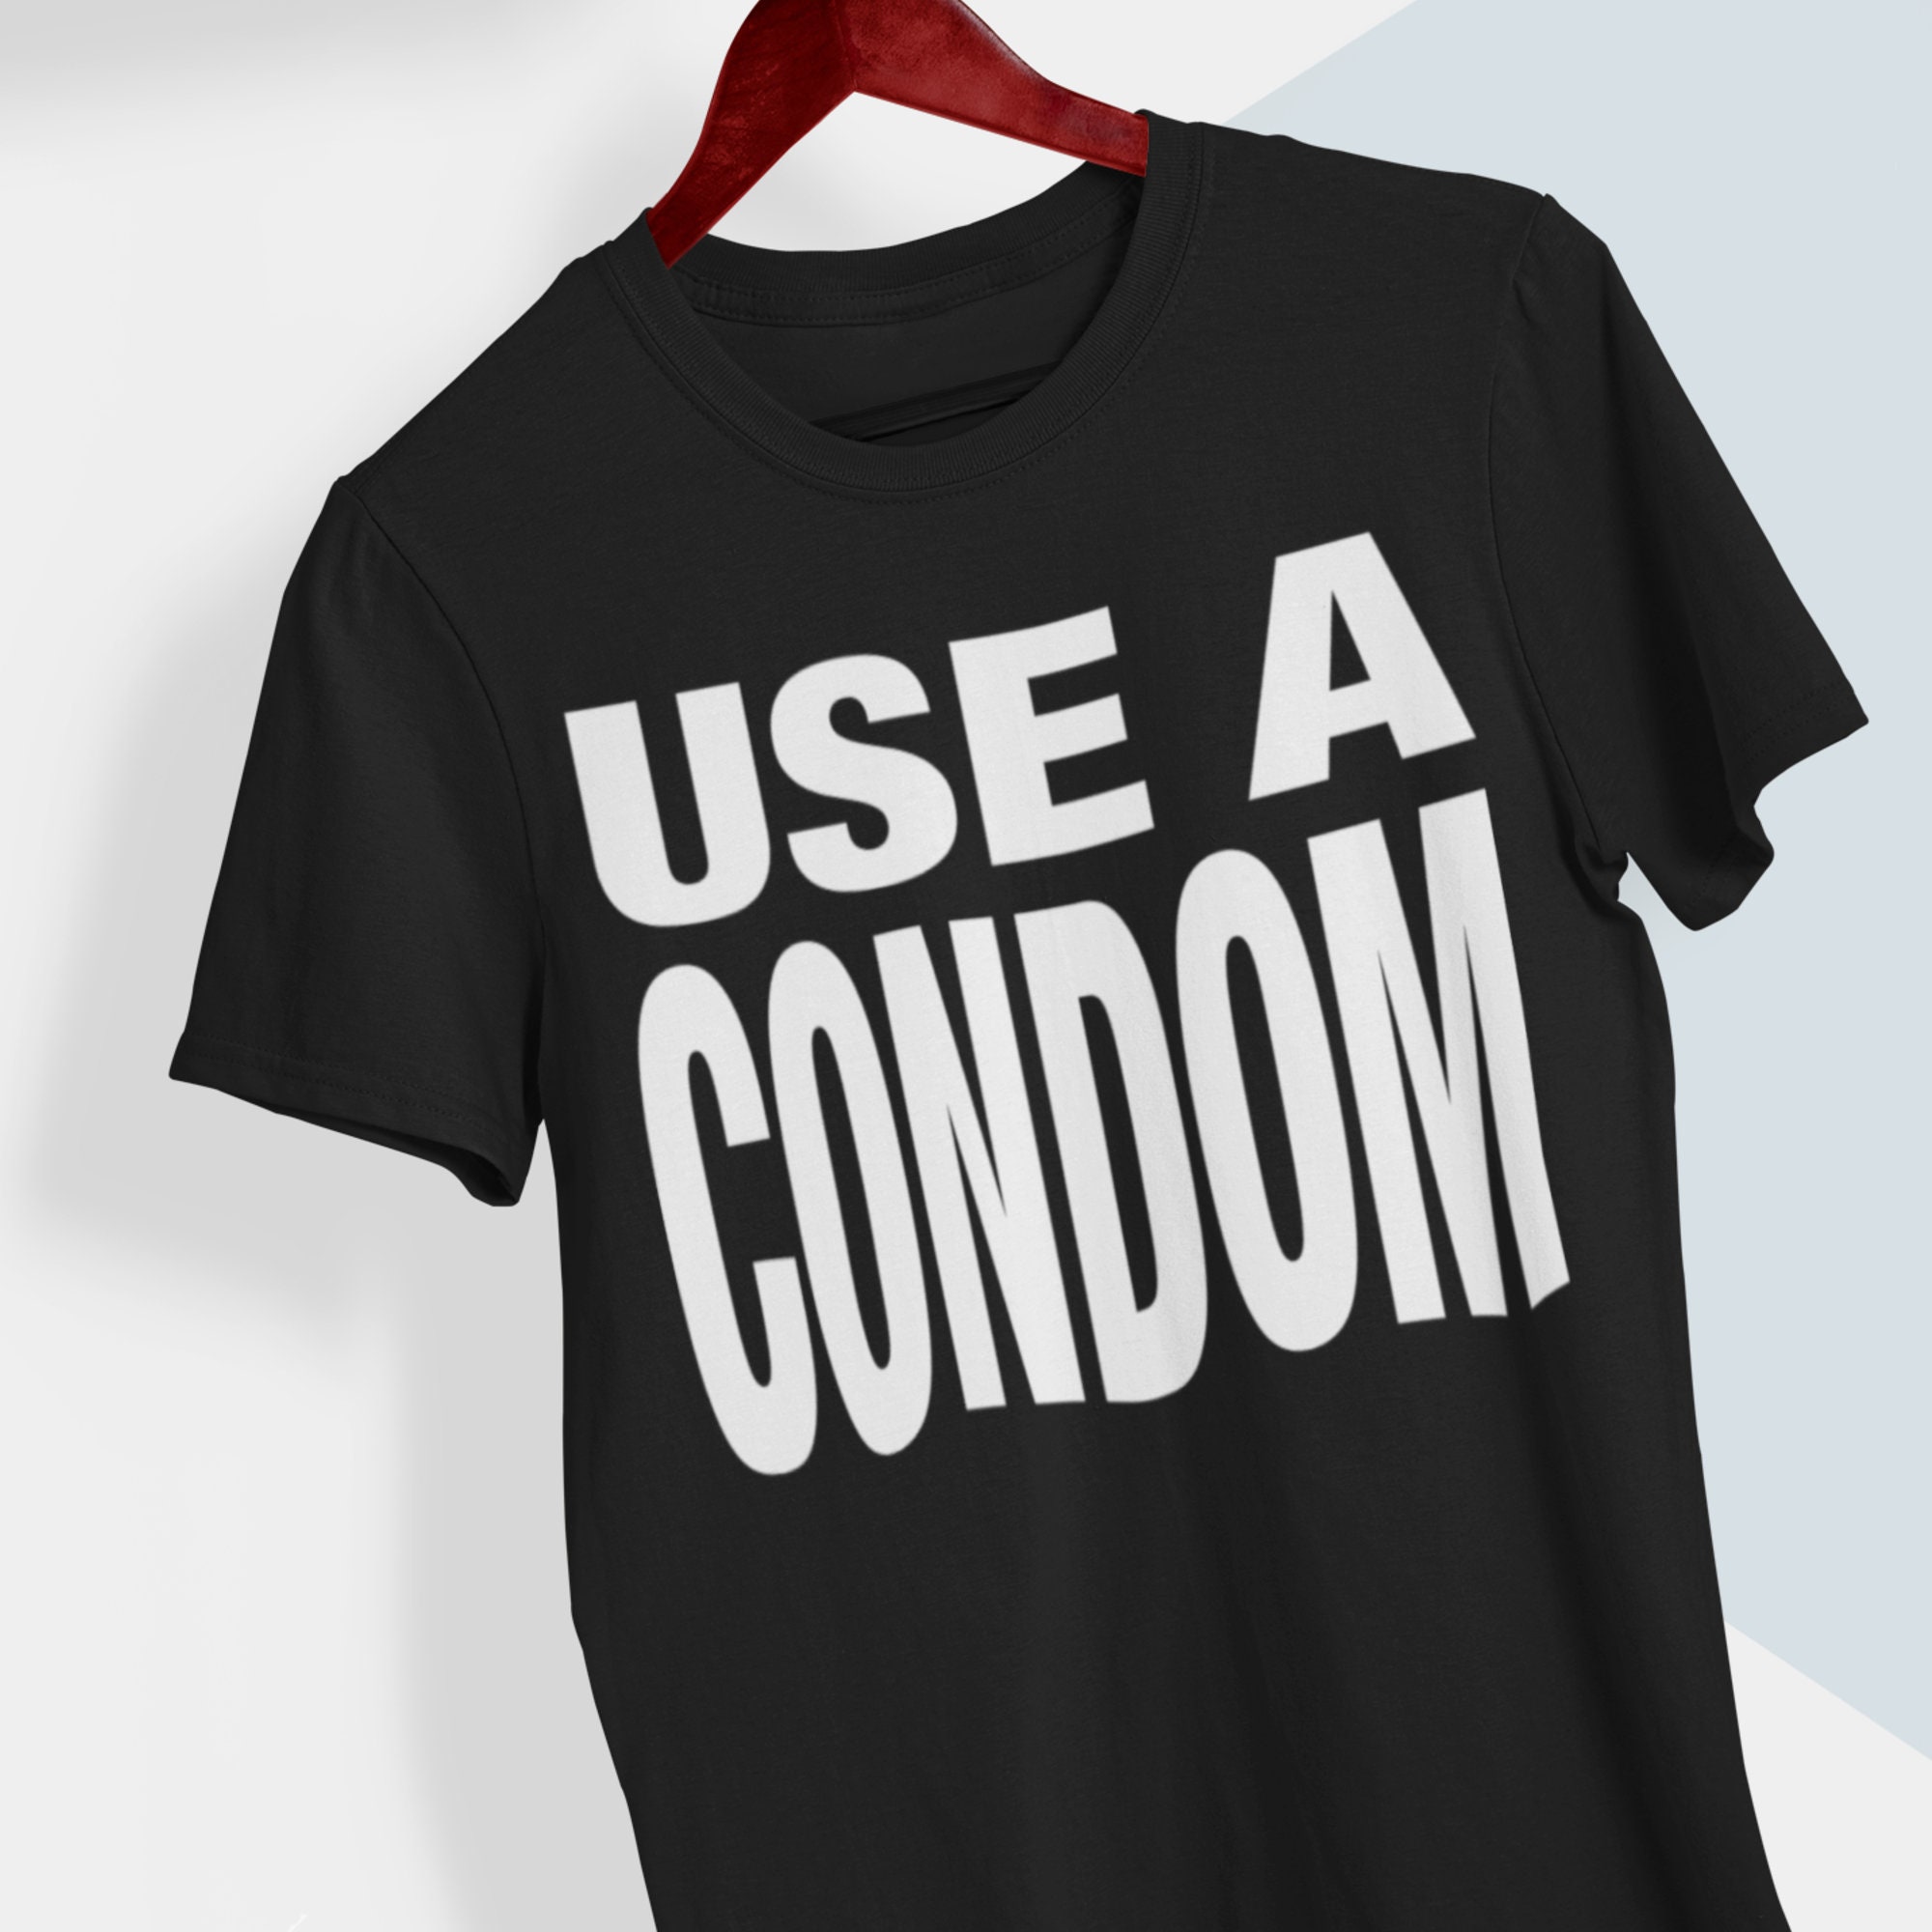 Condom Shirt pic pic